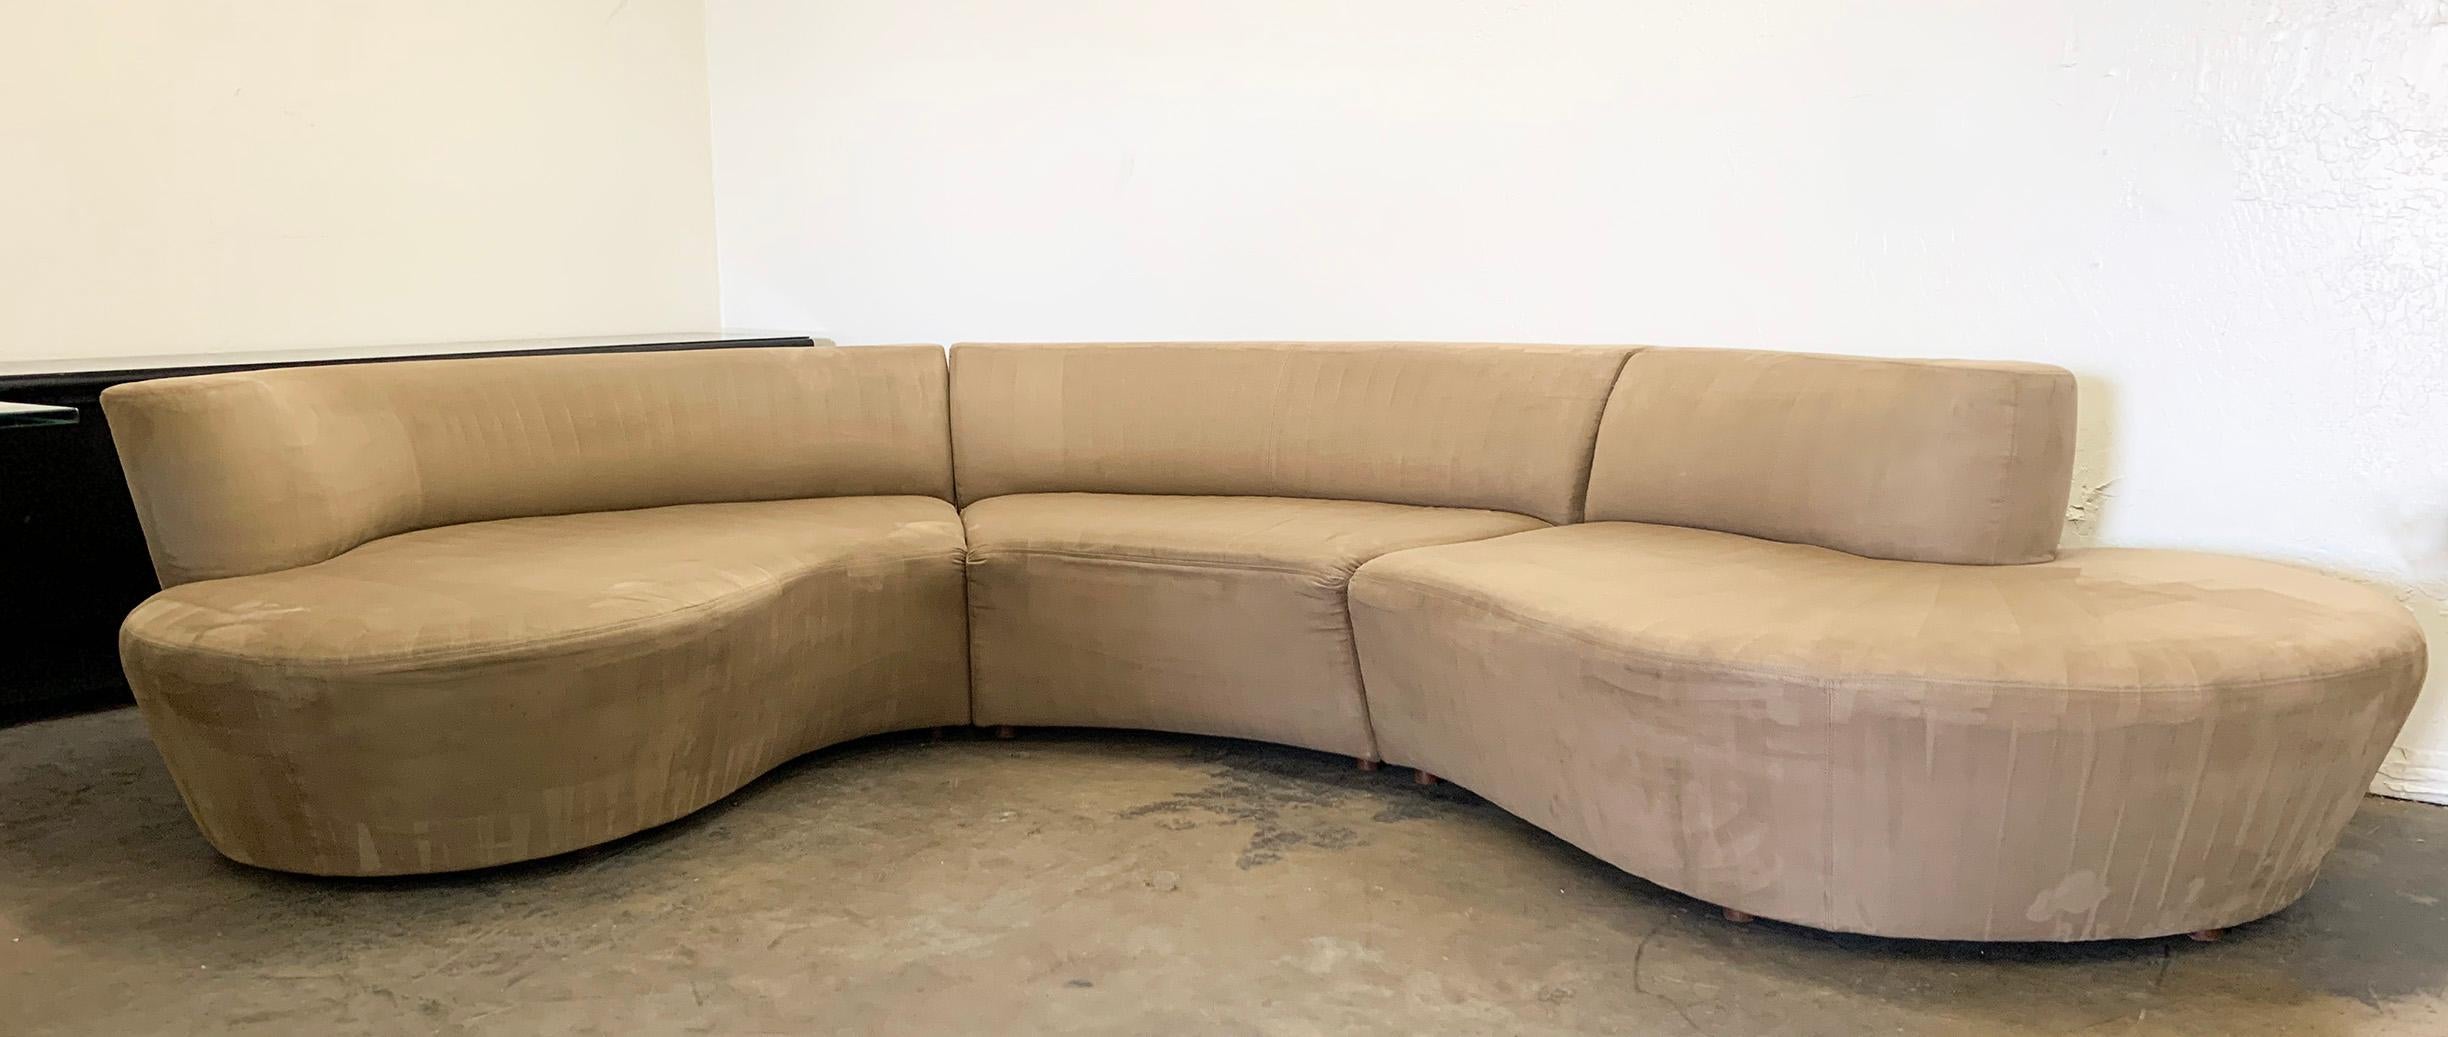 Mid-Century Modern Vladimir Kagan Serpentine Three-Piece Sectional Sofa, for Weiman